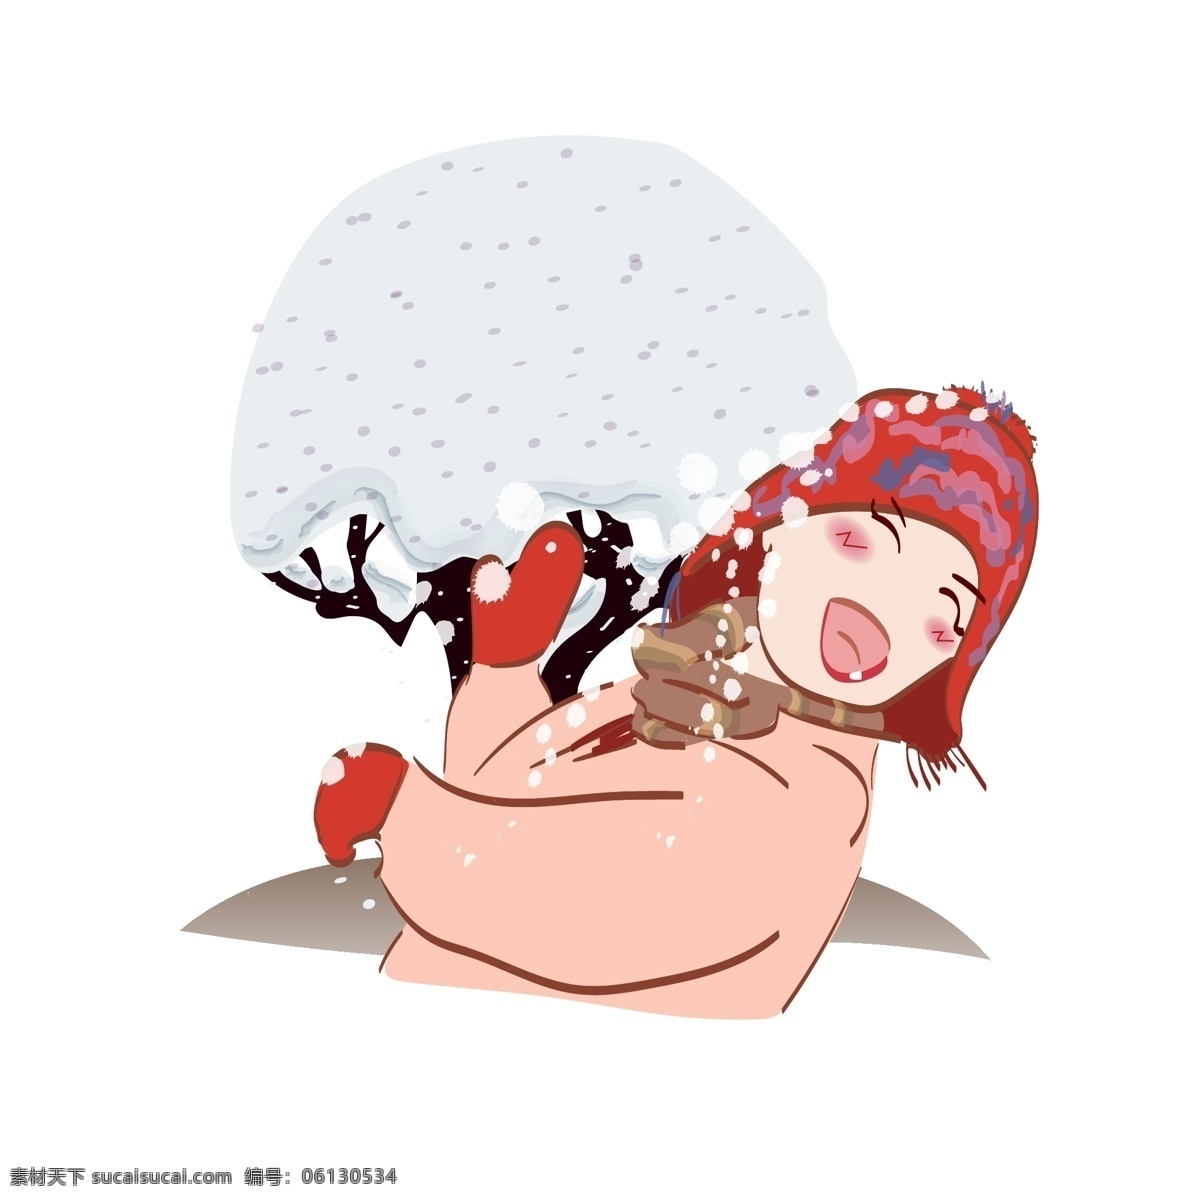 打雪仗 下雪 欢乐 红帽子 女孩 冬天 元素 场景 小清新 矢量 手绘 手账 雪 海报